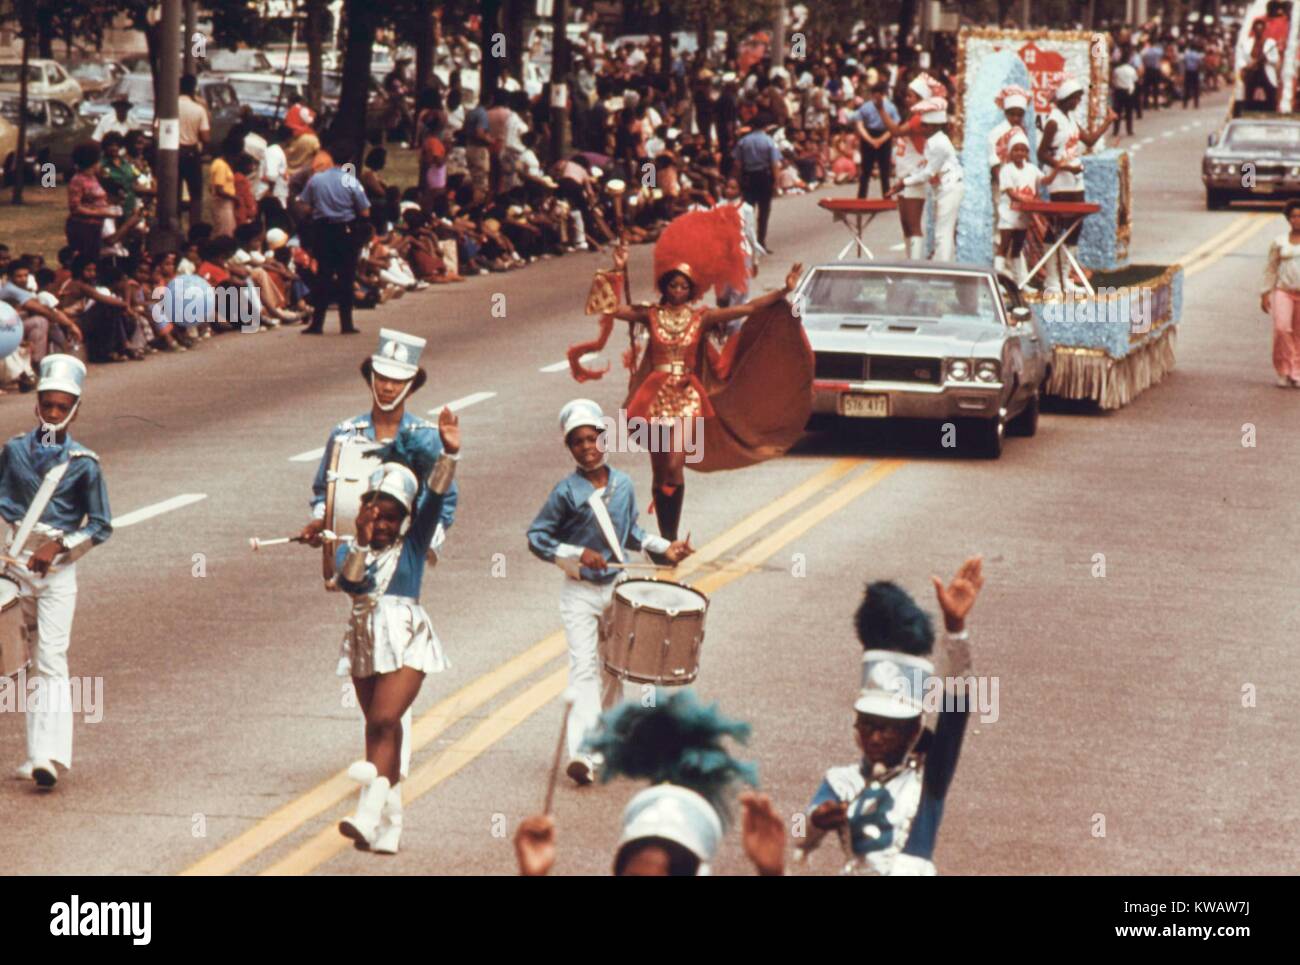 Marching Band de Bud Billiken Day Parade, un evento anual que se celebra la historia de los negros y el orgullo, al lado sur de Chicago, Illinois, agosto de 1973. Imagen cortesía de los Archivos Nacionales. Foto de stock